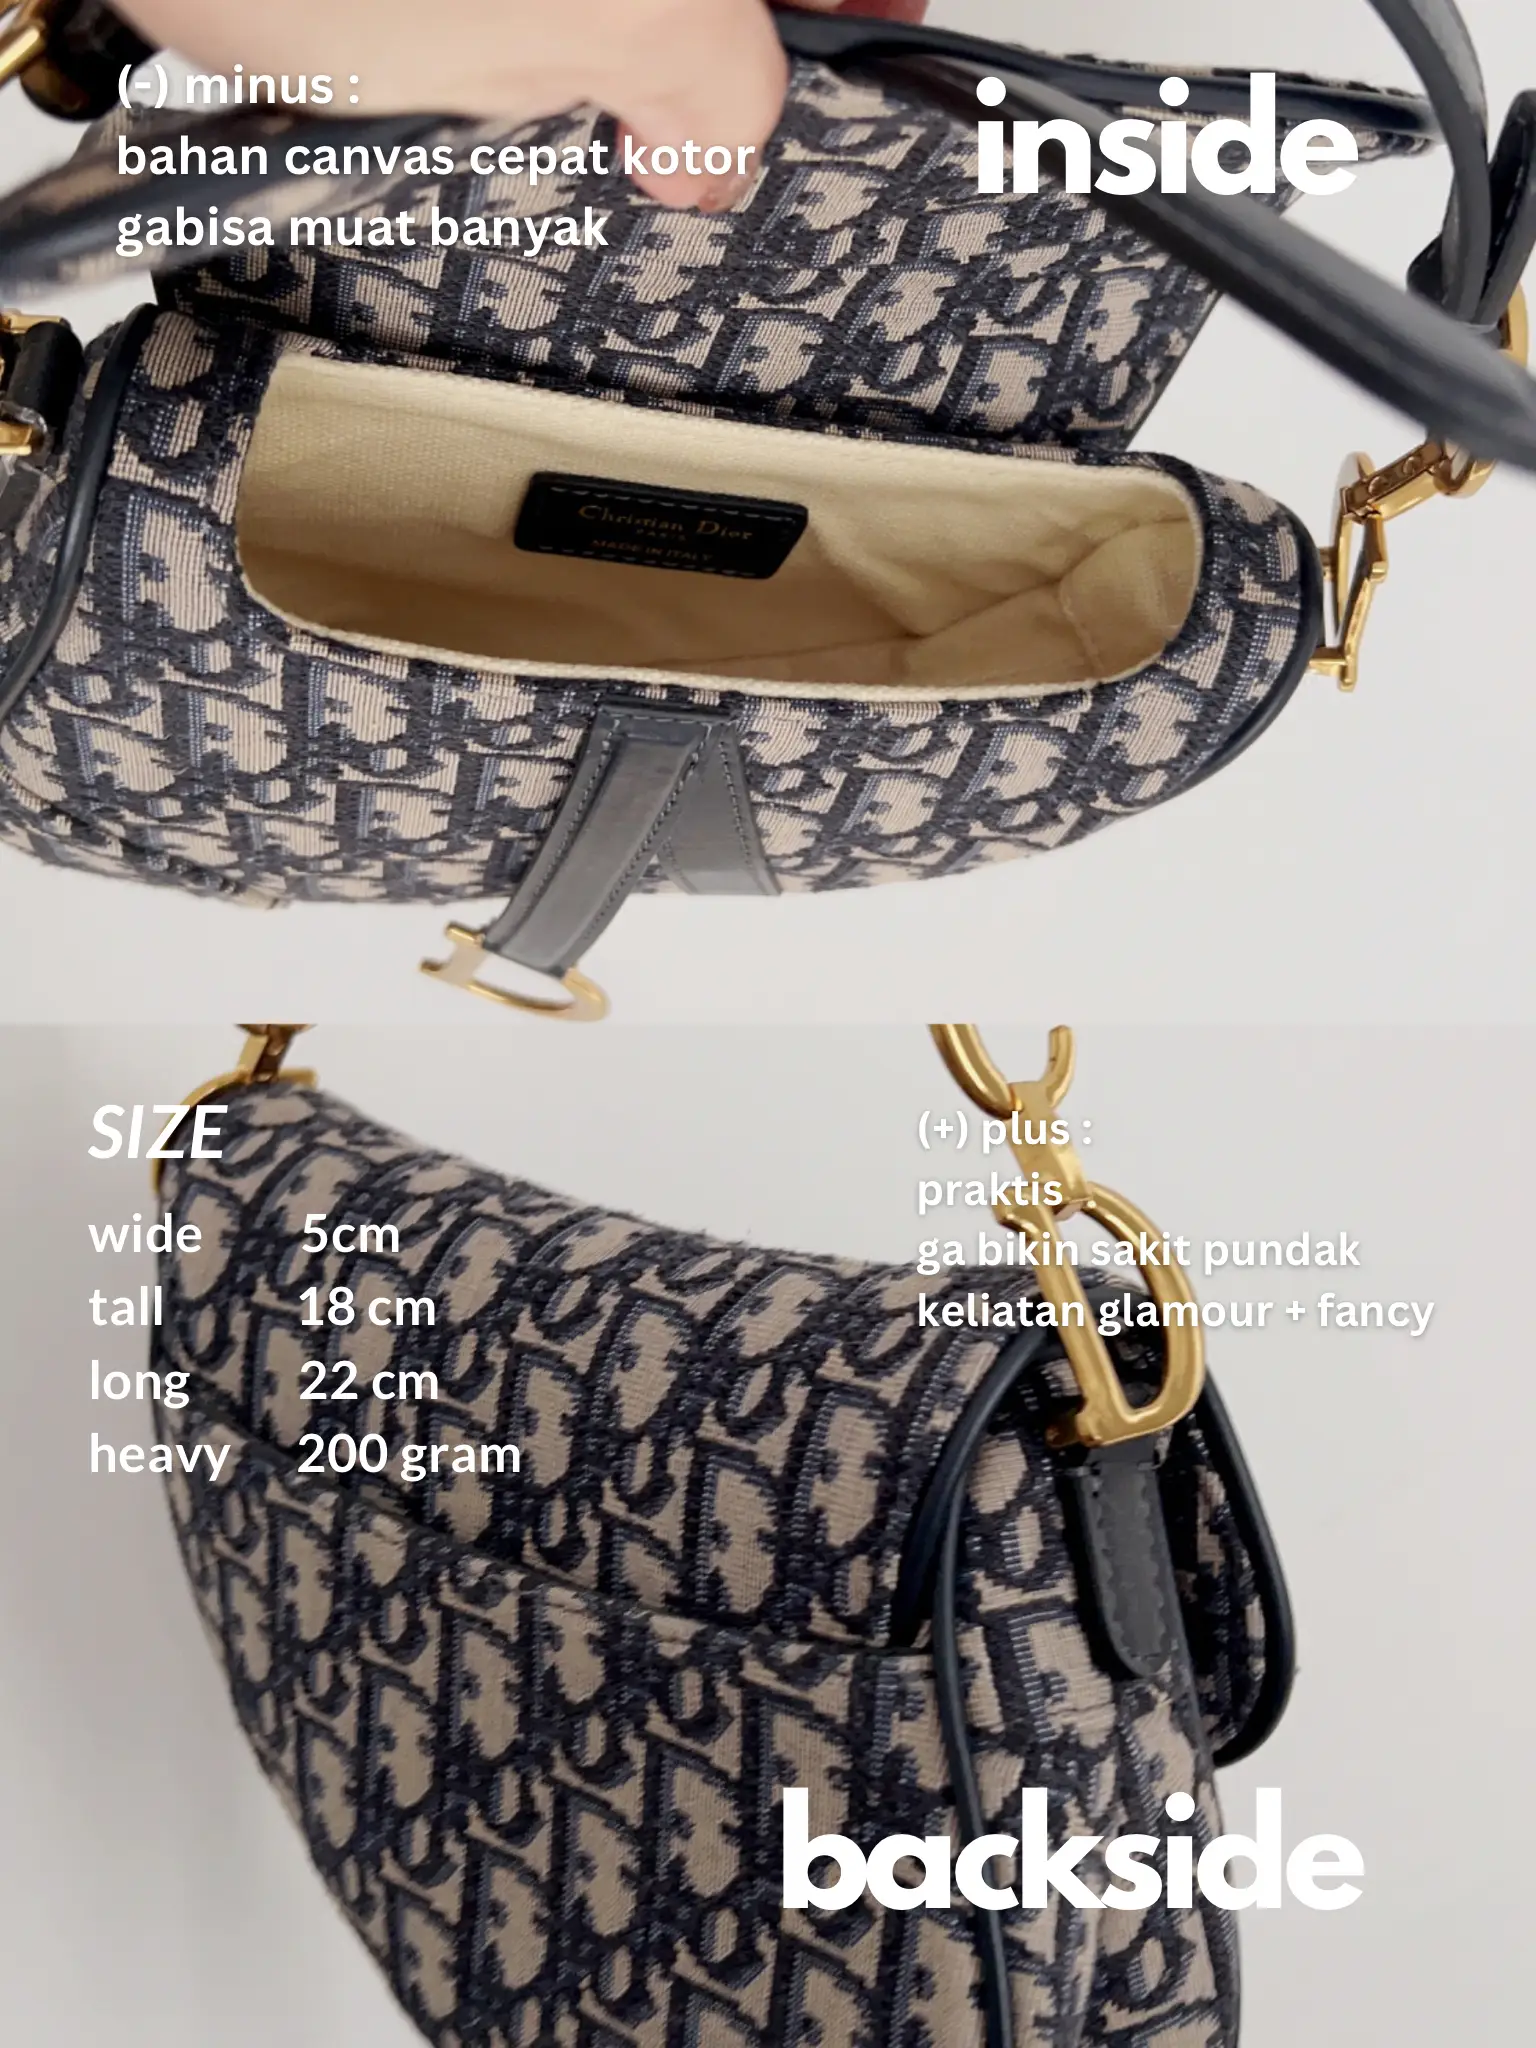 Dior Small Tote Bag $200 ? Fake vs Real Review 